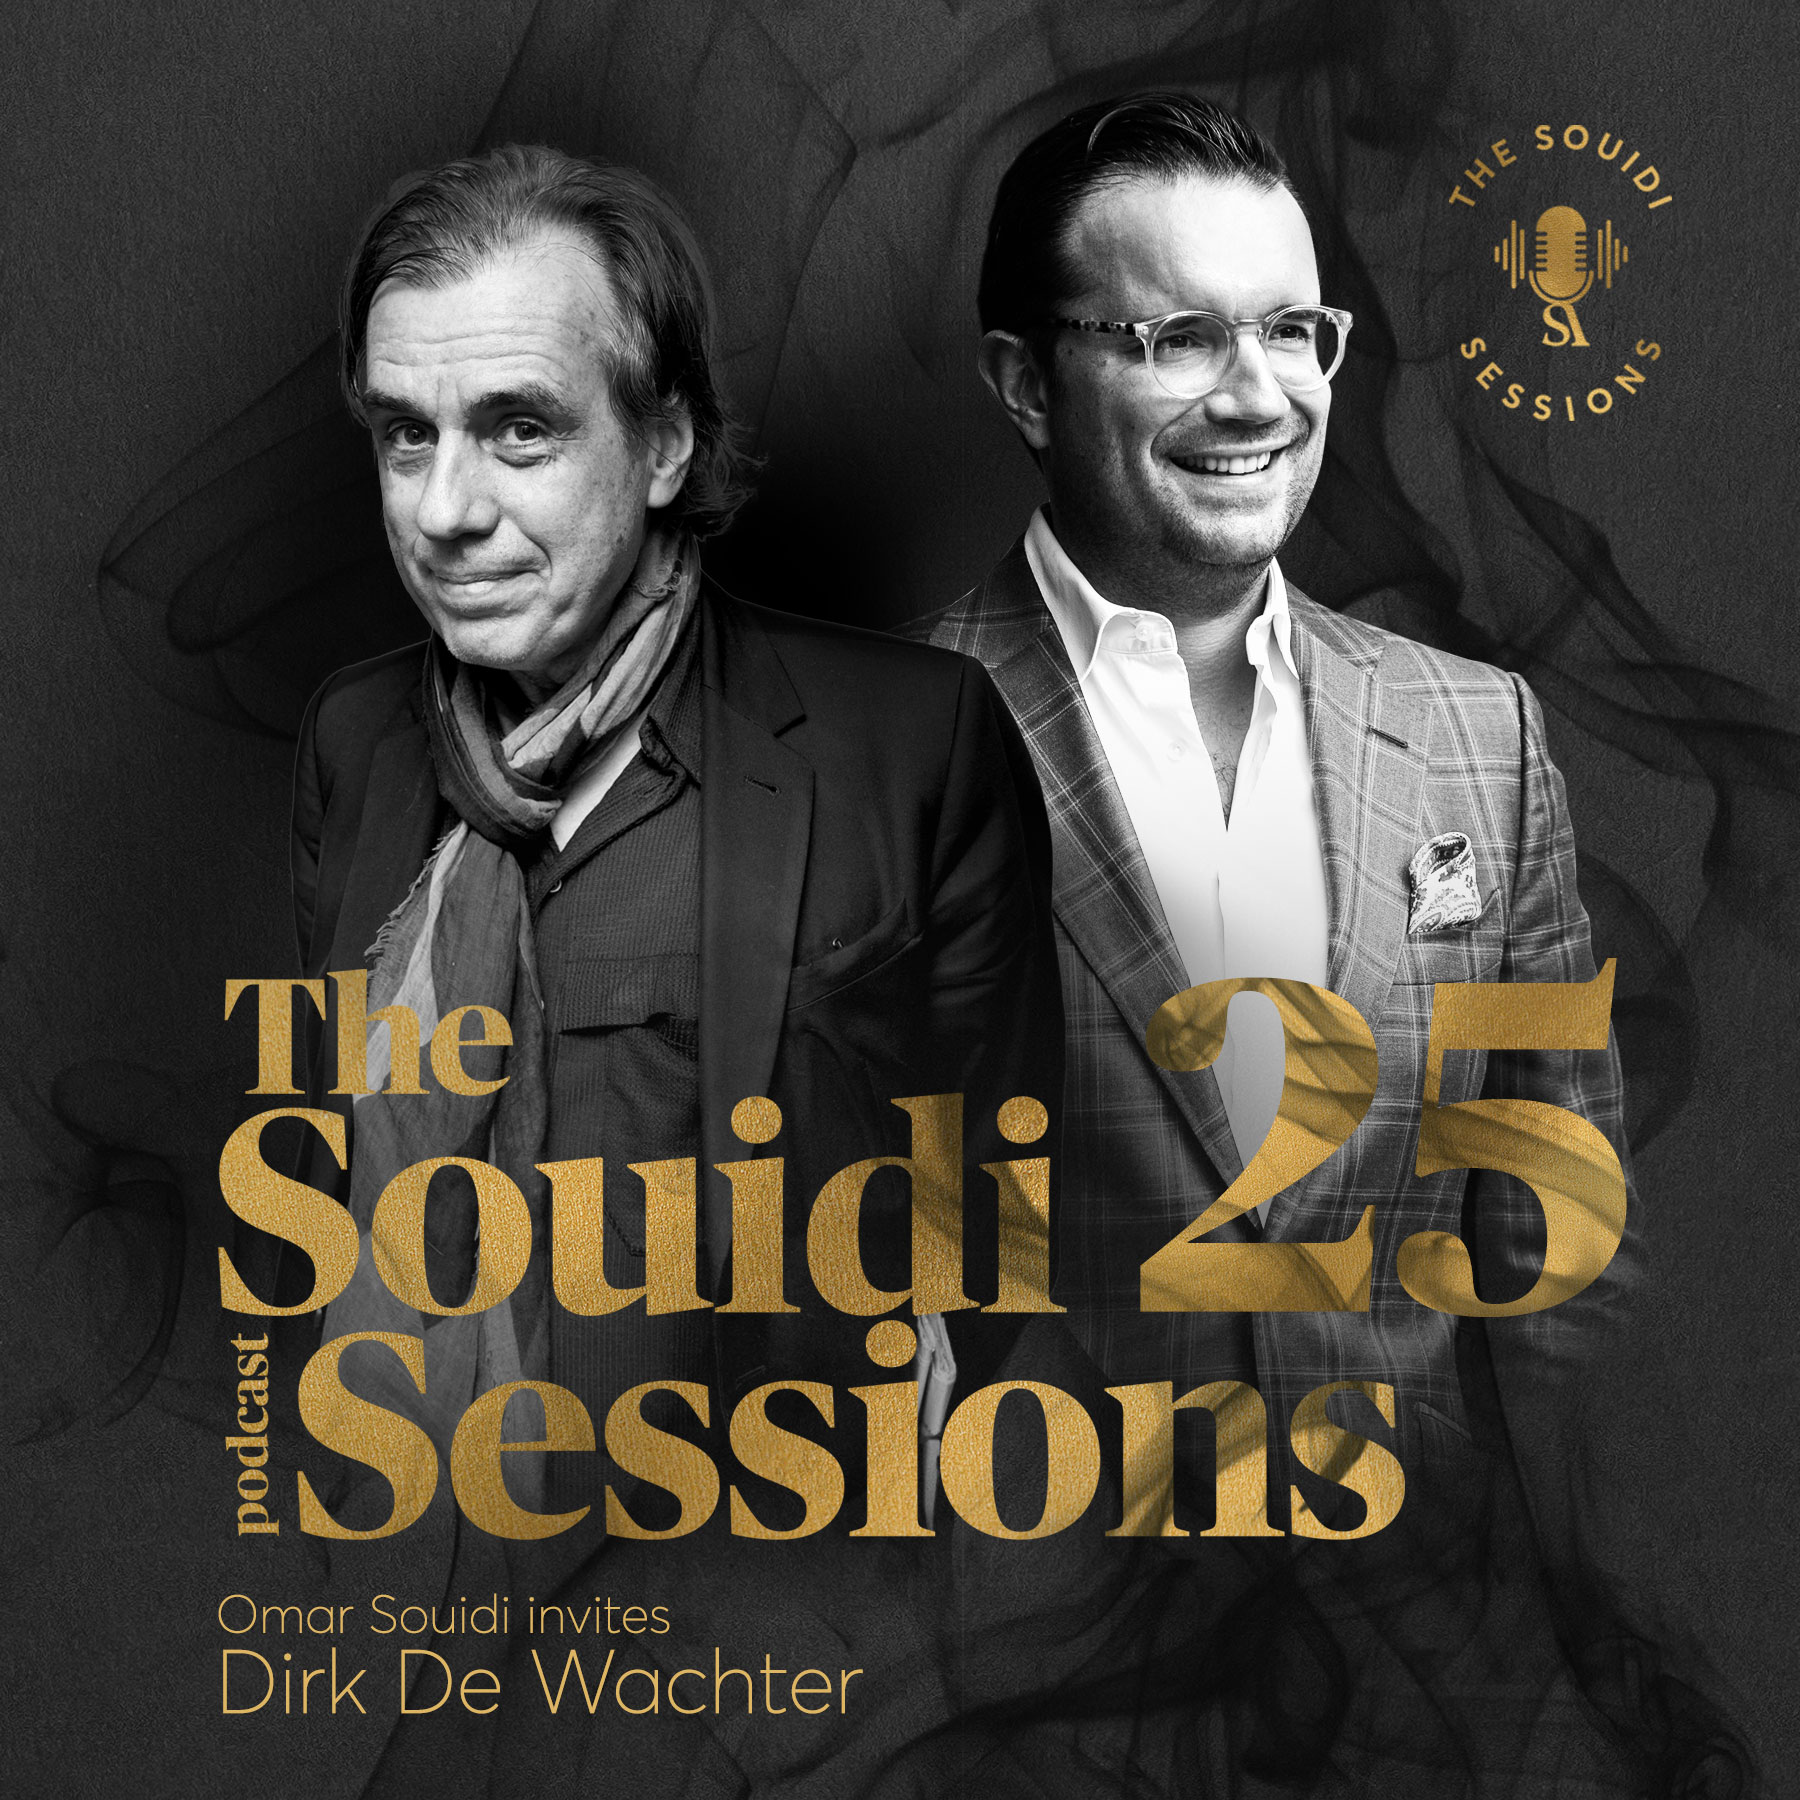 Souidi sessions met Dirk De Wachter